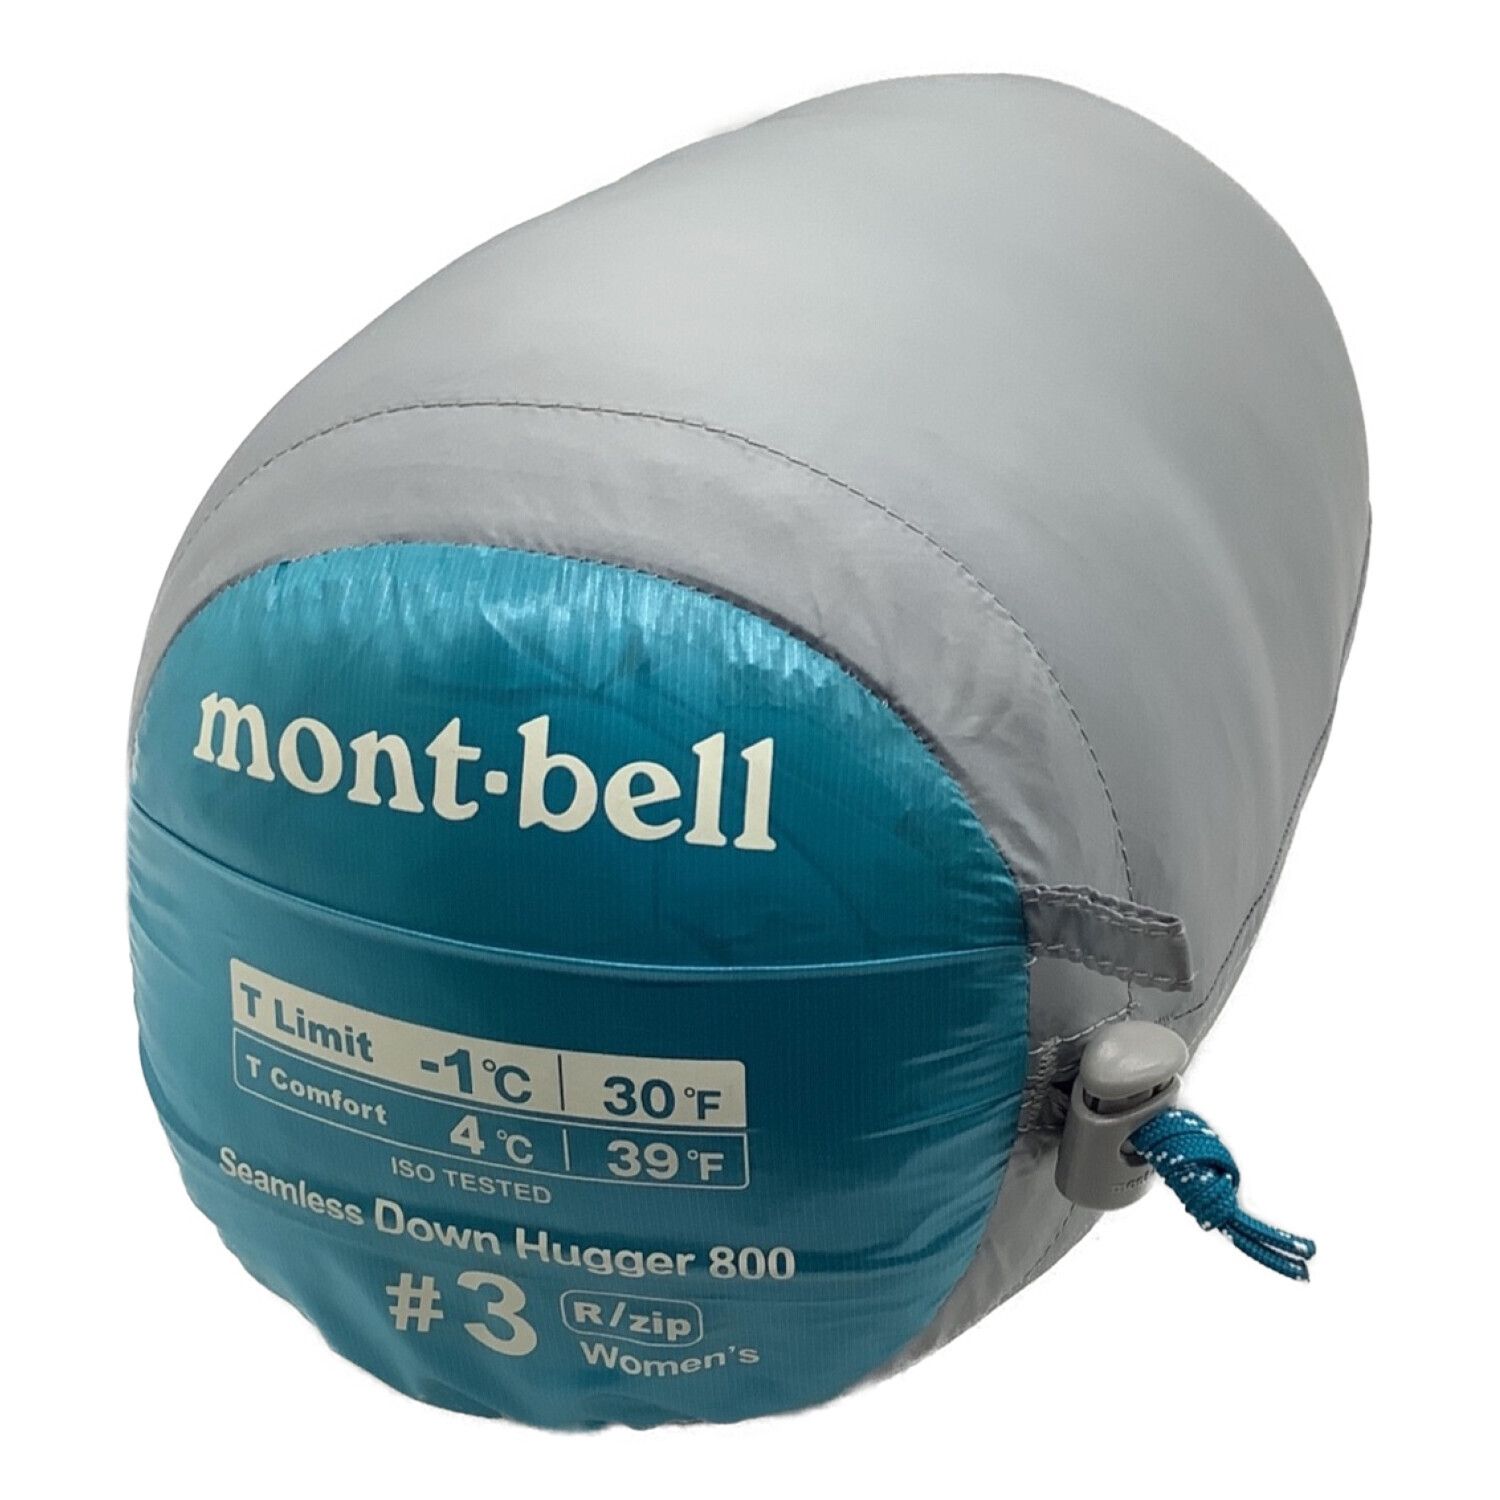 mont-bell (モンベル) マミー型シュラフ 女性用 1121414 ダウンハガー ...